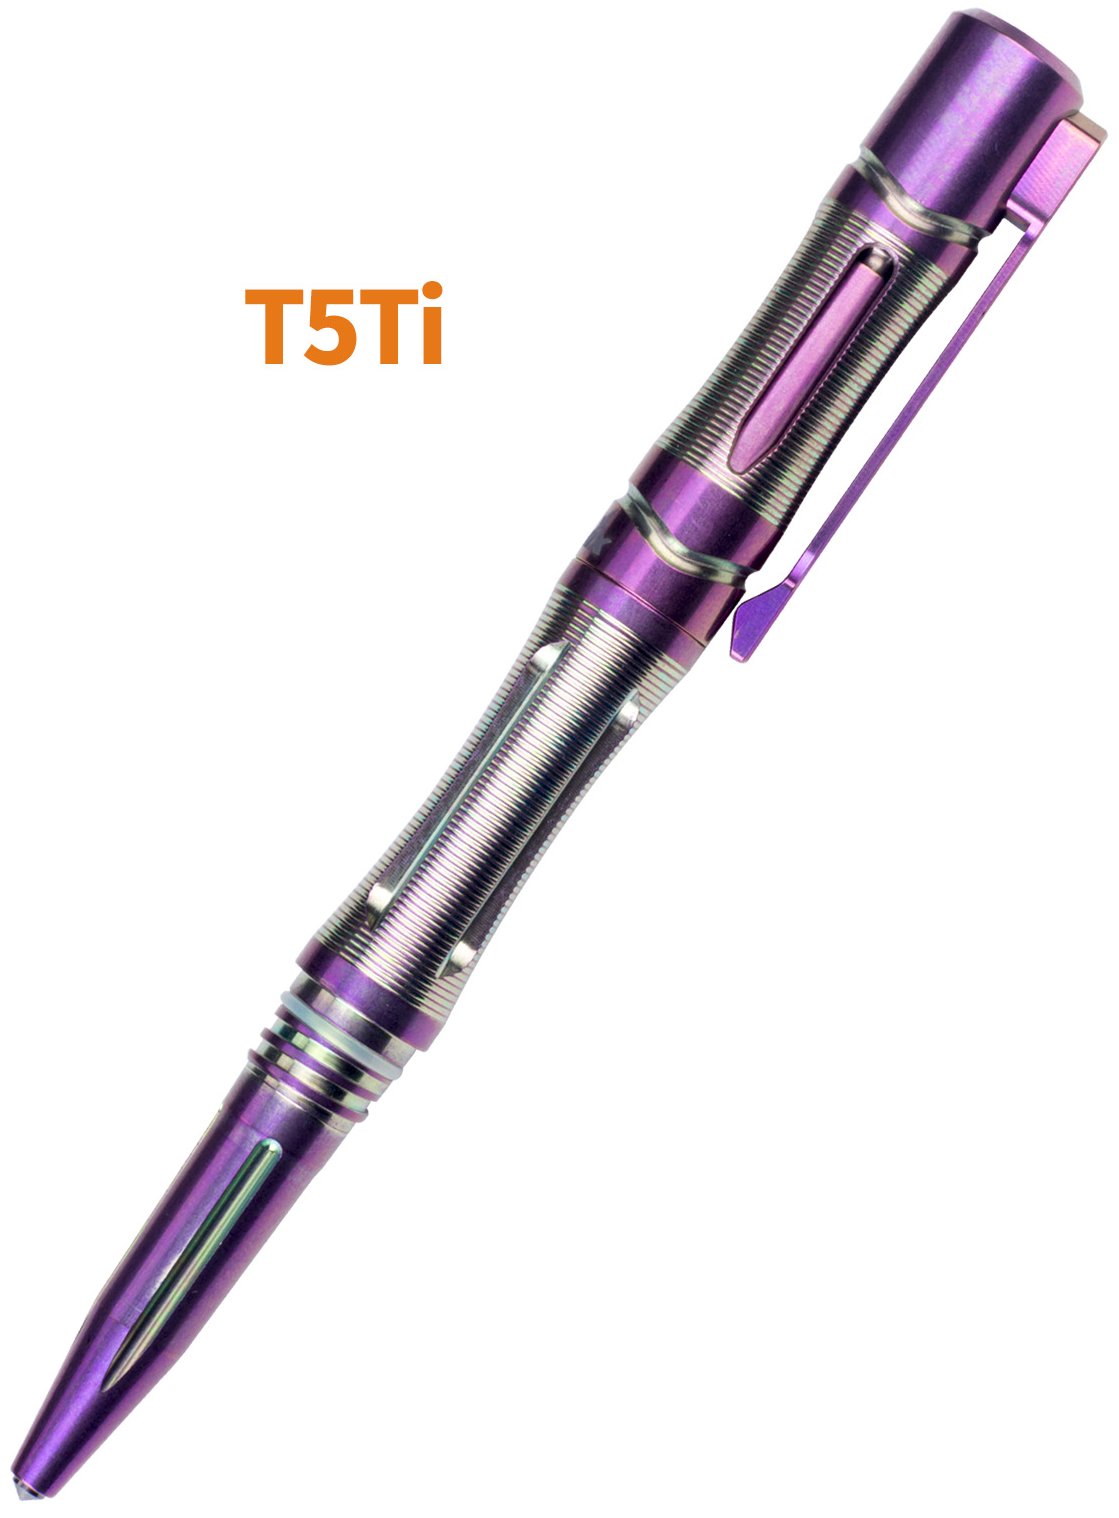 Produktbild von Fenix T5Ti lila -Taktischer Kugelschreiber - Selbstverteidigung - Glasbrecher - Kubotan